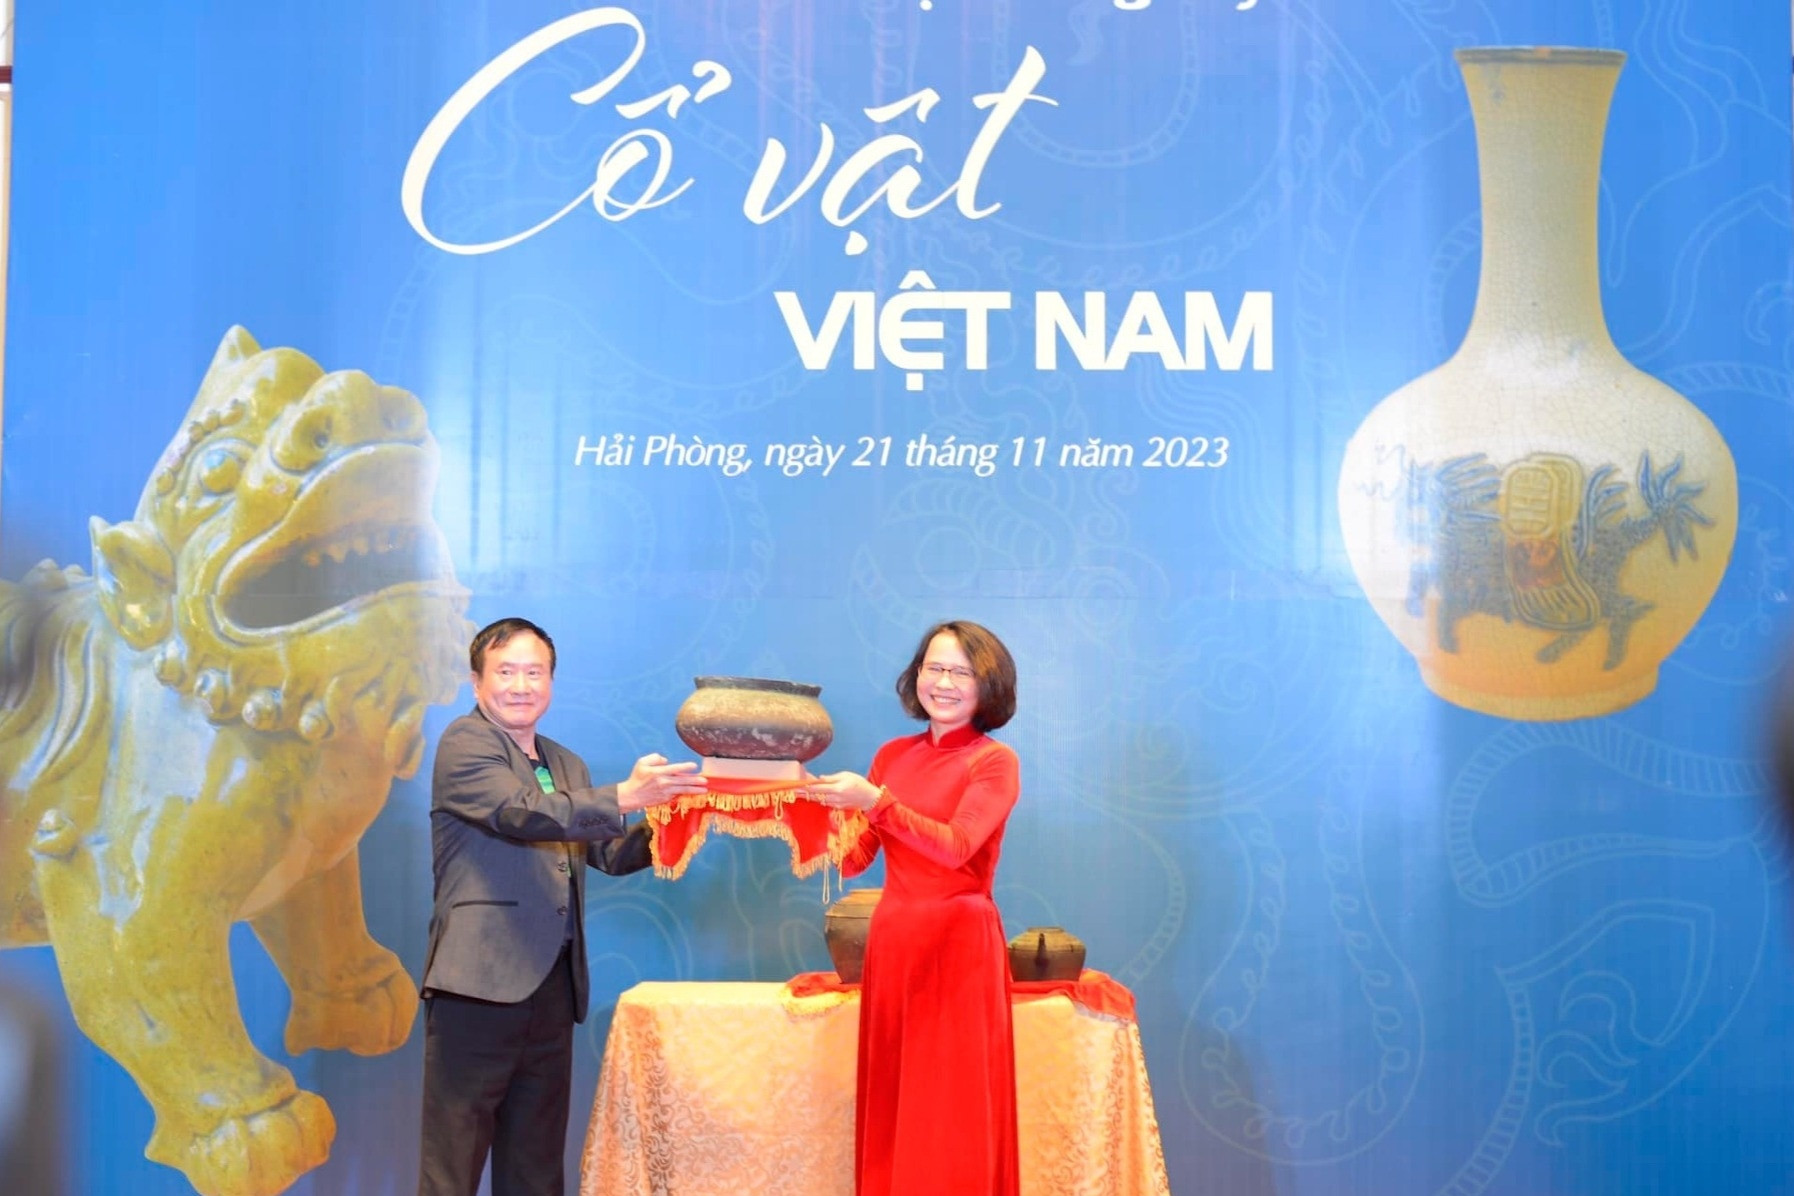 Mãn nhãn với Chuyên đề “Cổ vật Việt Nam” tại Bảo tàng Hải Phòng